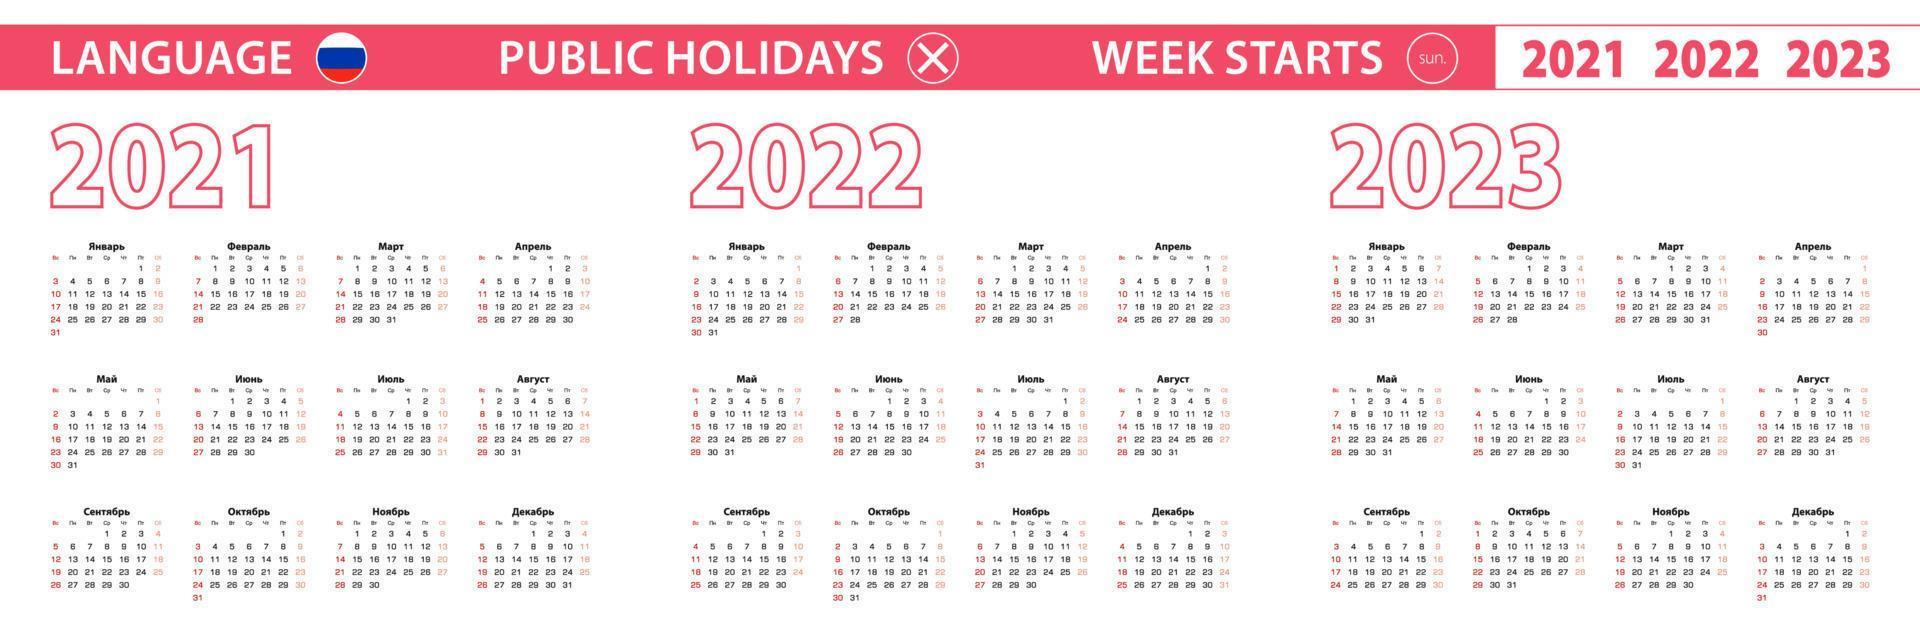 Calendario vettoriale anno 2021, 2022, 2023 in lingua russa, la settimana inizia domenica.